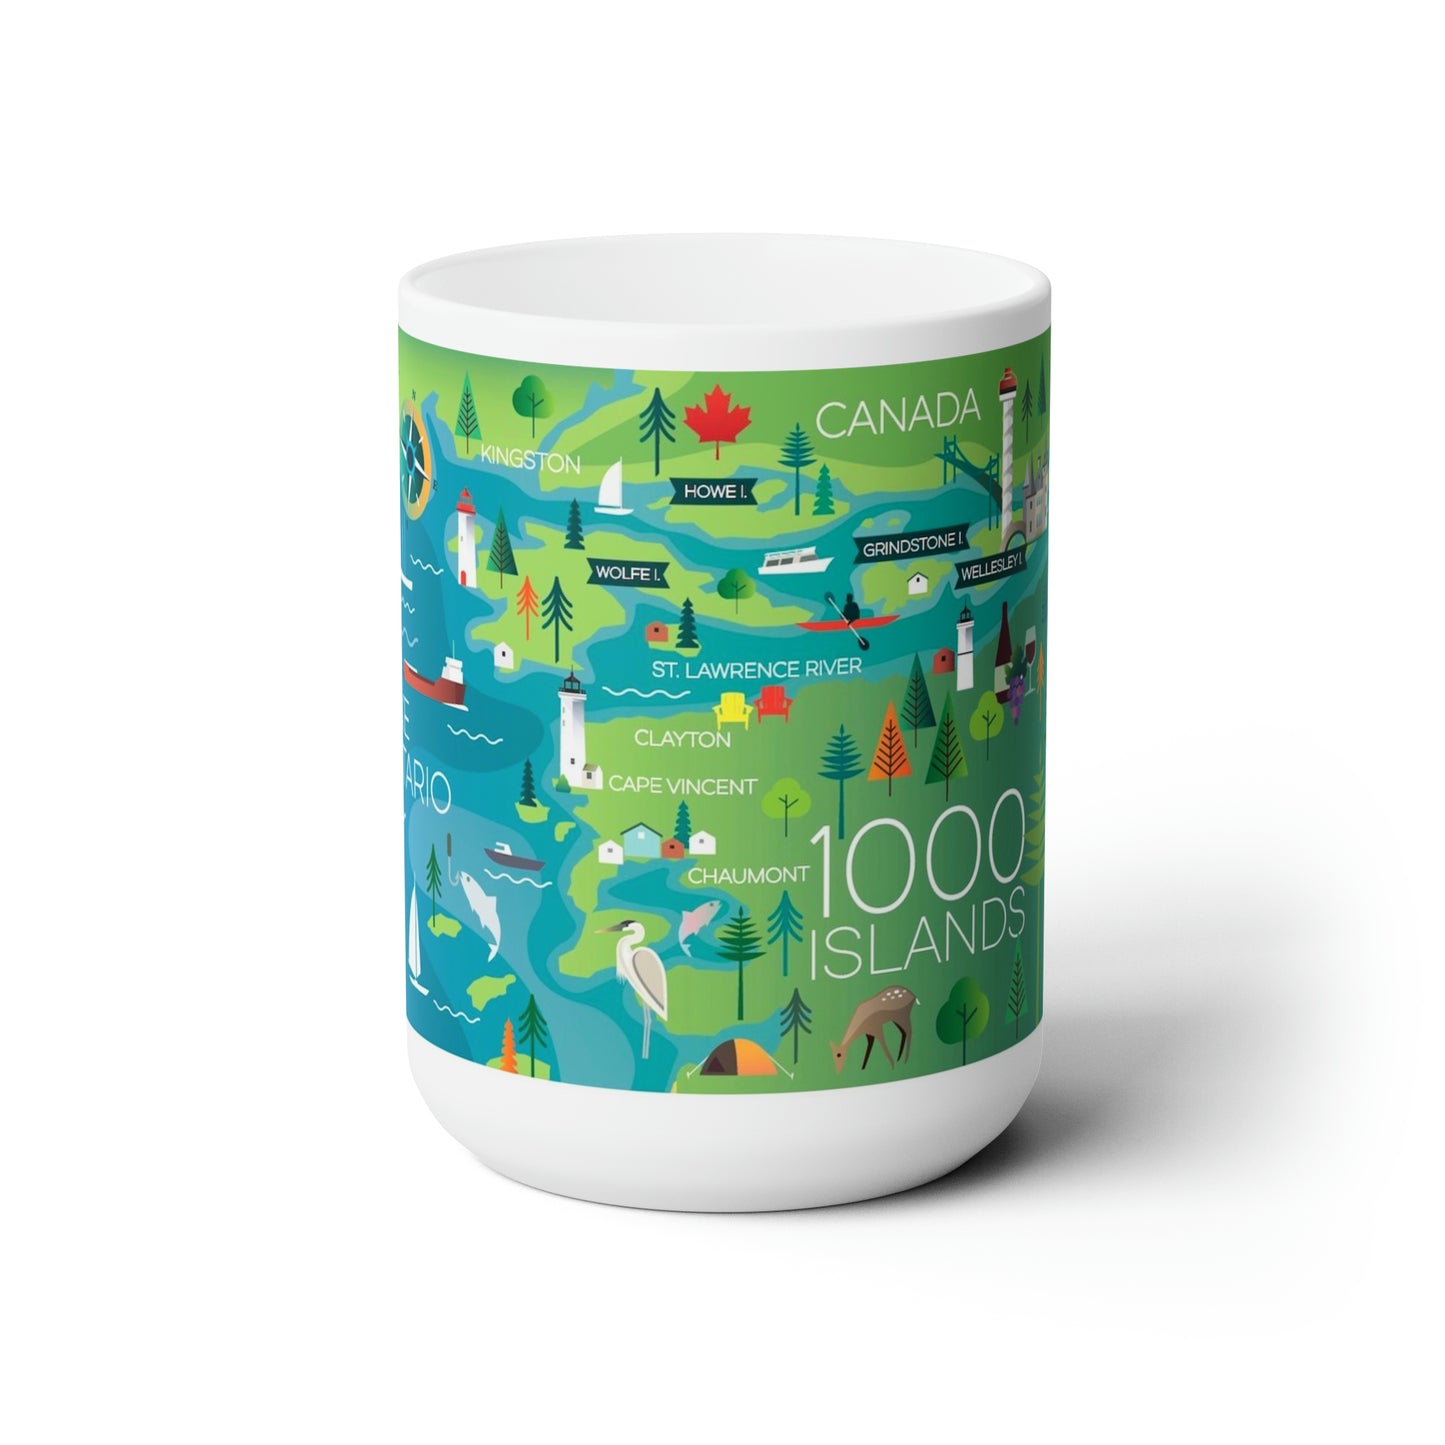 1000 Islands Ceramic Mug 11oz or 15oz